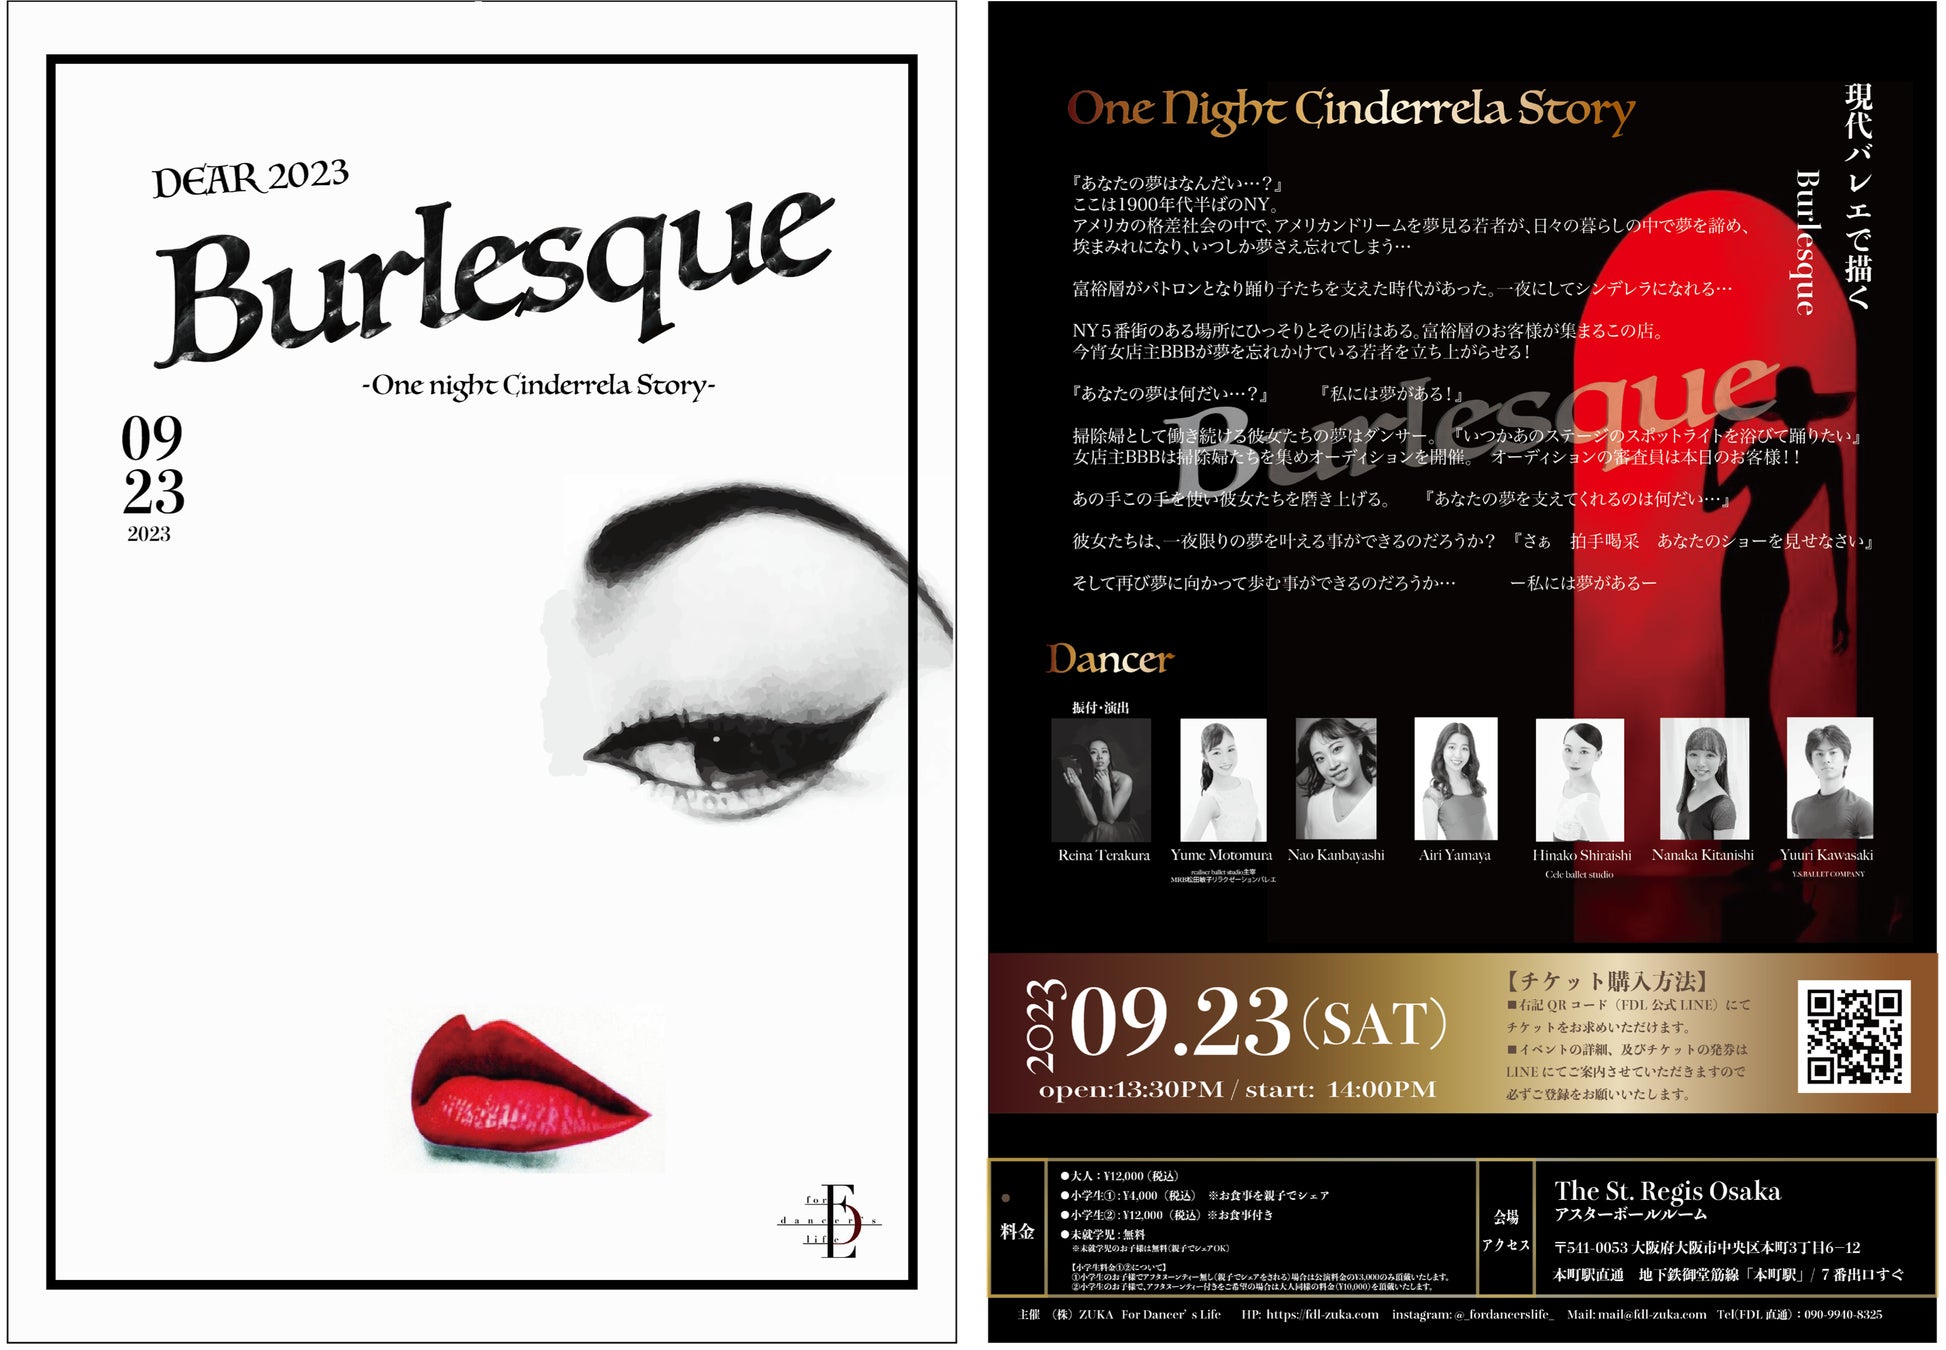 『Brand X（ブランドクロス）』がセントレジスホテル大阪で公演するダンスショー「DEAR 2023 Burlesque」に協賛。期間中に売店にて商品を限定販売。